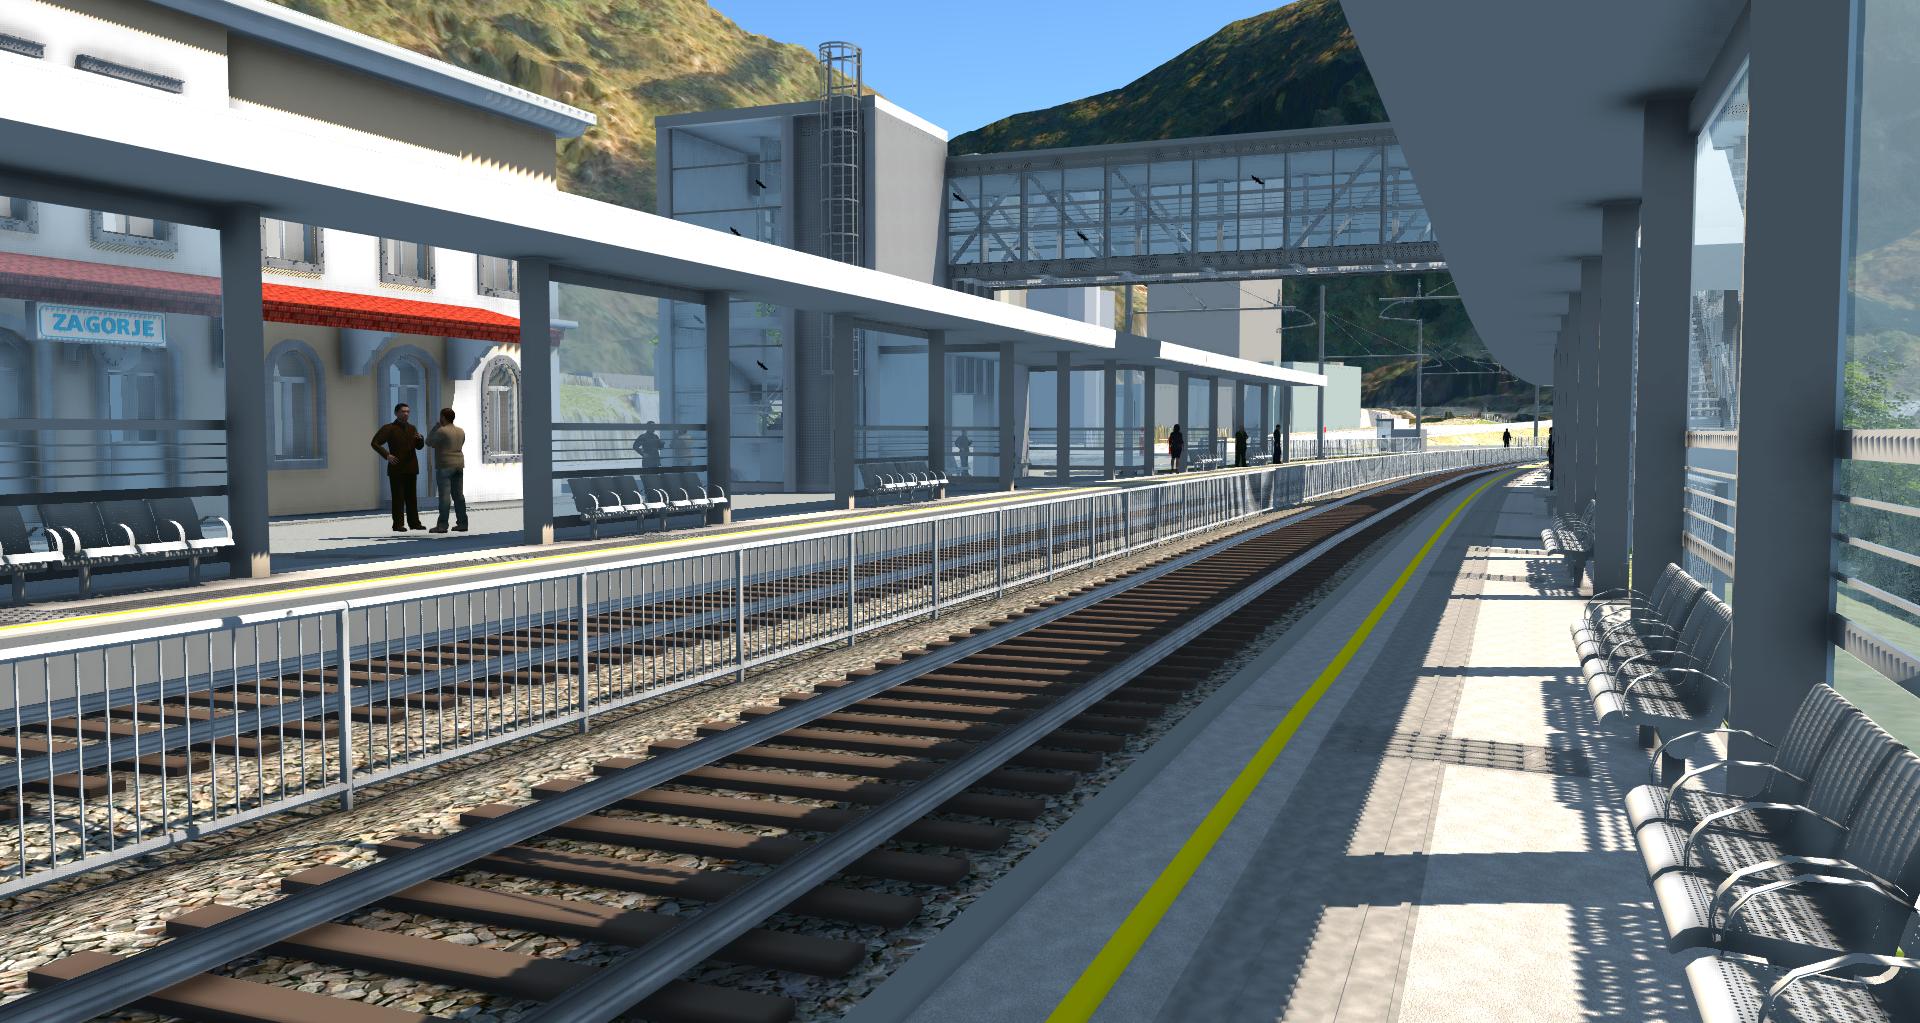 Vizualizacija nove železniške postaje Zagorje.